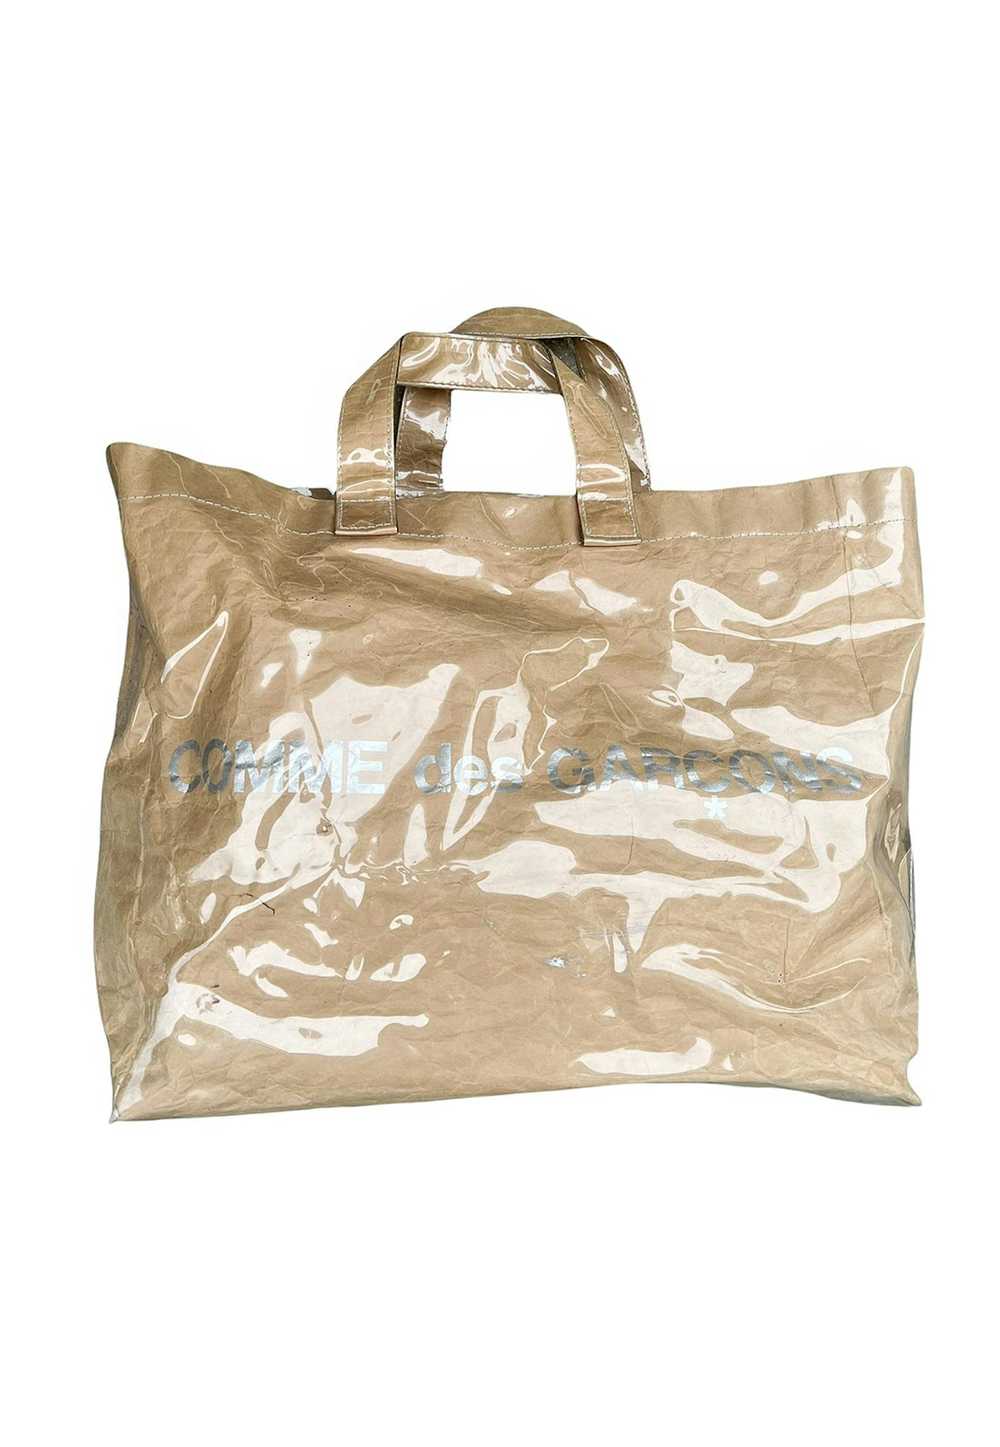 Comme des Garcons OG PVC Paper Tote Bag - image 2